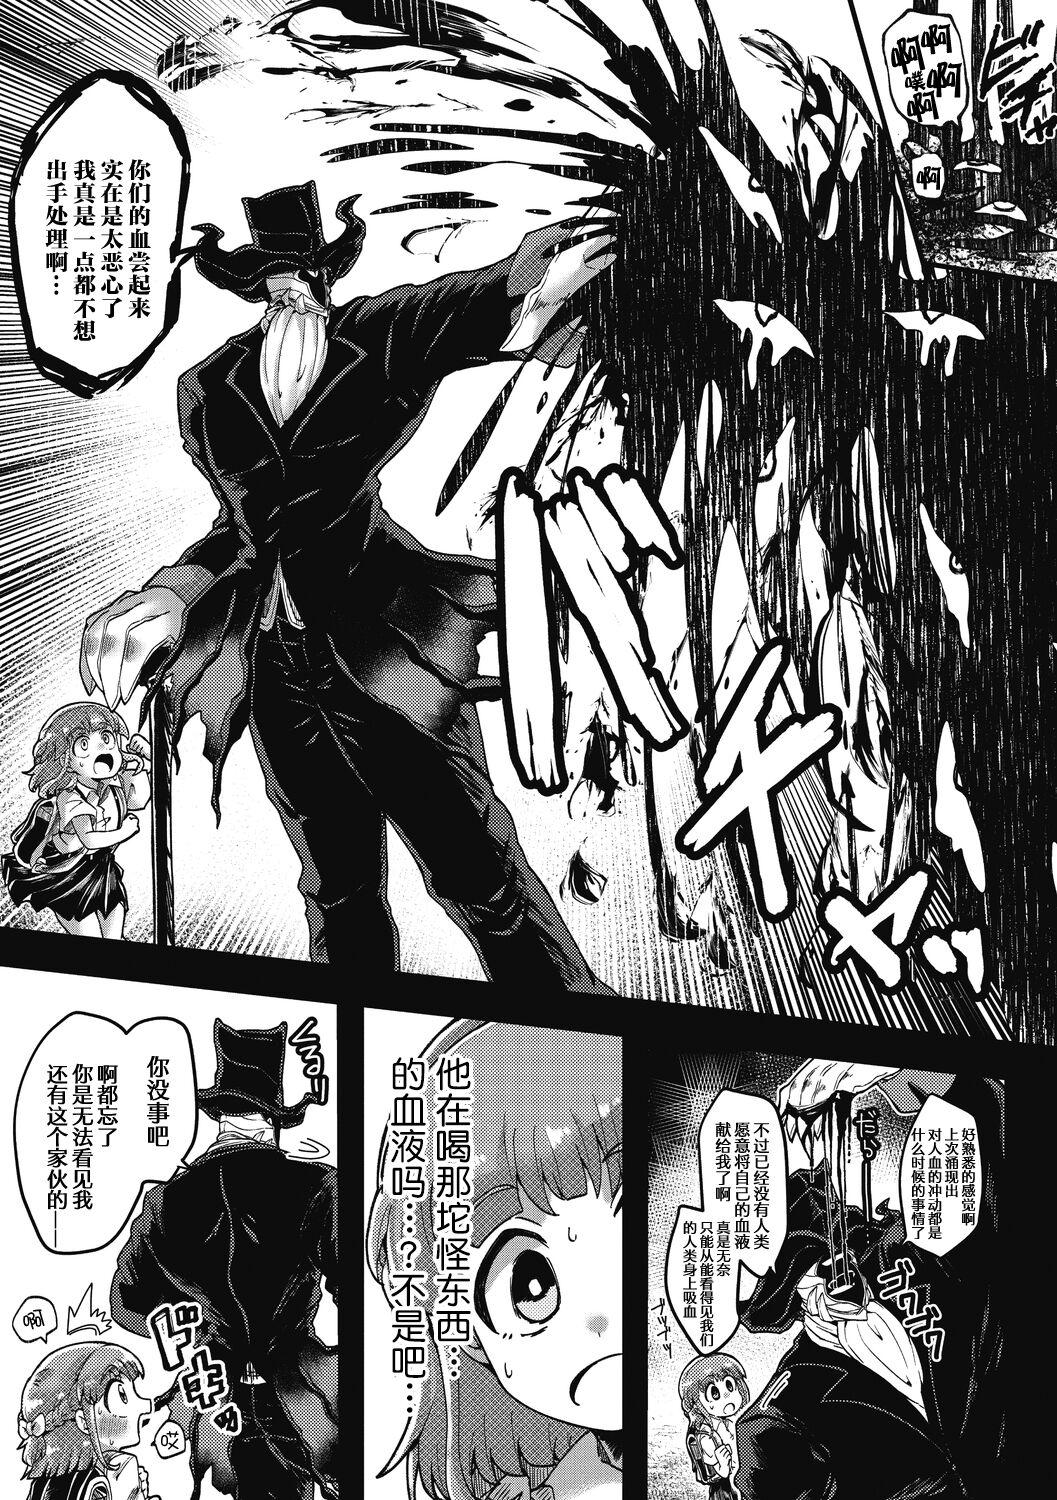 Bwc Watashi no Homme Fatale Mmf - Page 3